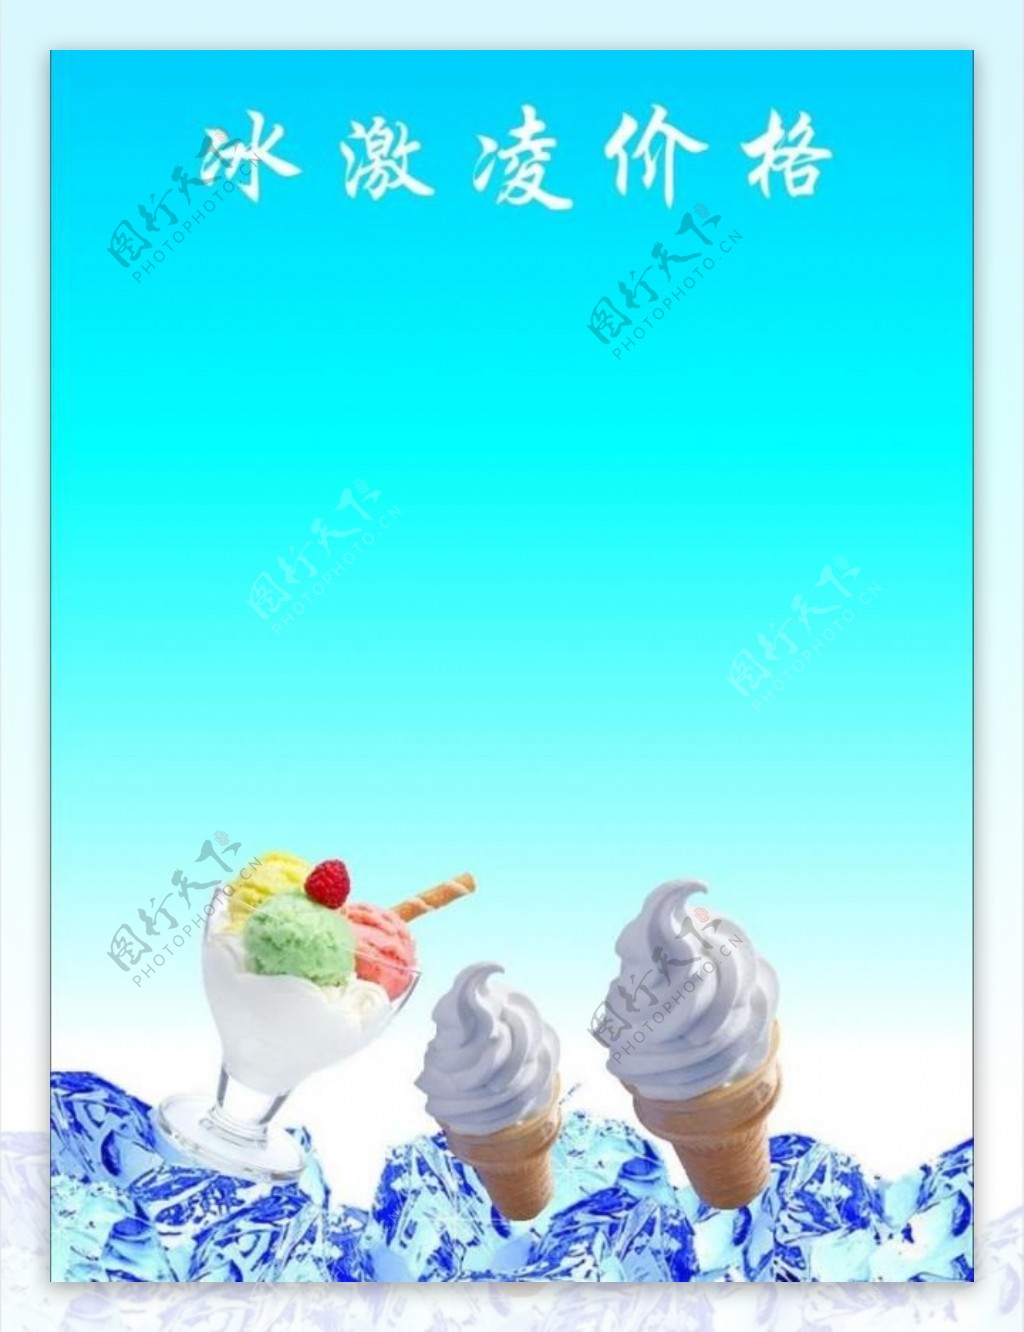 冰激凌价格背景图图片